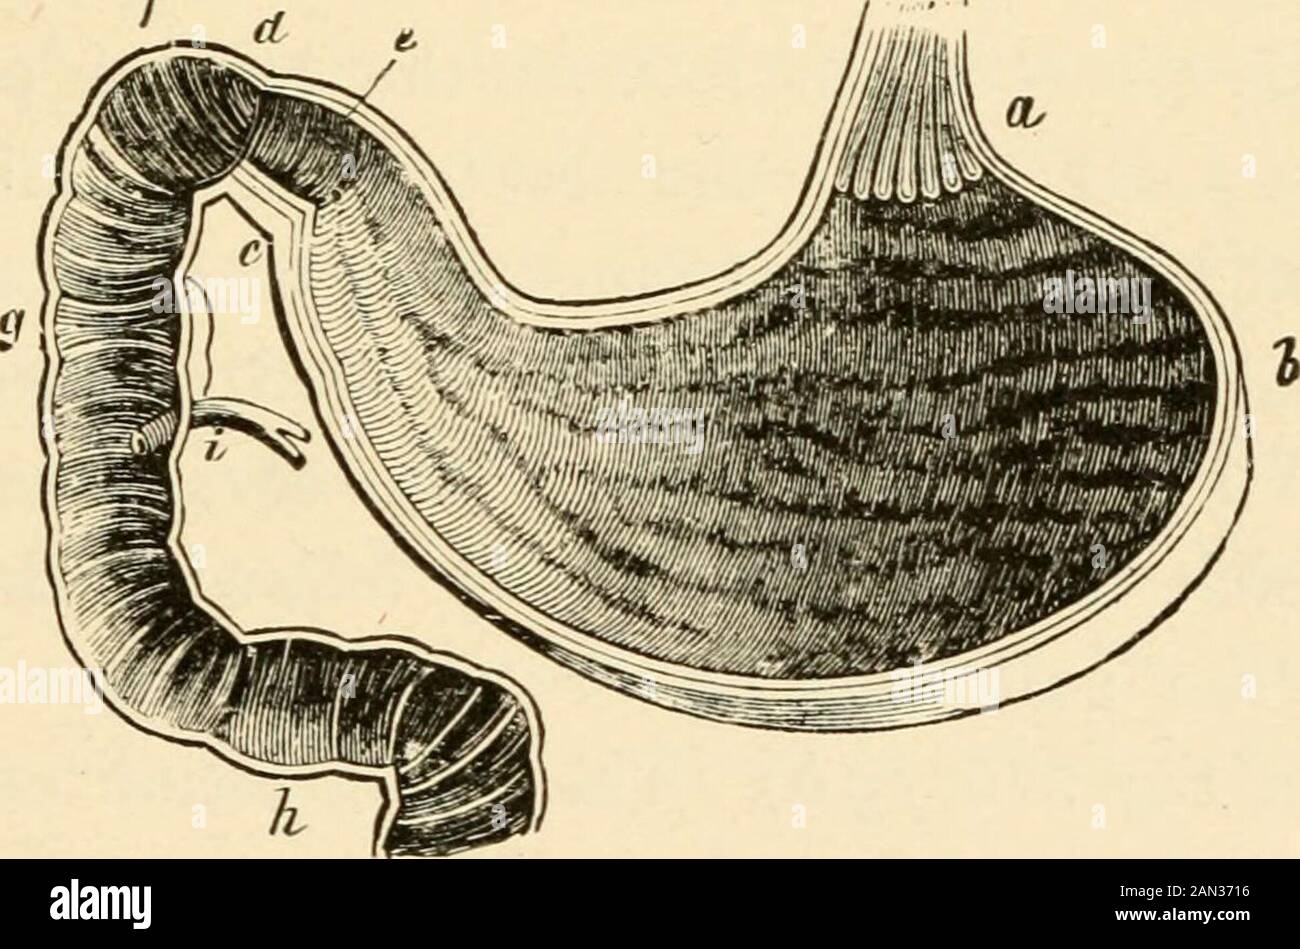 La evolución del hombre: Una exposición popular de los principales puntos de la ontogenia humana y filogenia el alemán de Ernst Haeckel . el hielo y el habla, y también se desarrolla aparte del canal intestinal. Frente a la laringe se encuentra la glándula tiroides (tireoidea), que ocasionalmente se agranda hasta el llamado bocio. EL CANAL INTESTINAL HUMANO. 317 el gulet (cesófago) pasa hacia abajo a través del tórax, a lo largo de la columna vertebral, detrás de los pulmones y del corazón, y entra en la cavidad ventral, después de penetrar el diafragma. Este último (Fig. 16, z) es una partición membranosa, muscular, transversal, w Foto de stock